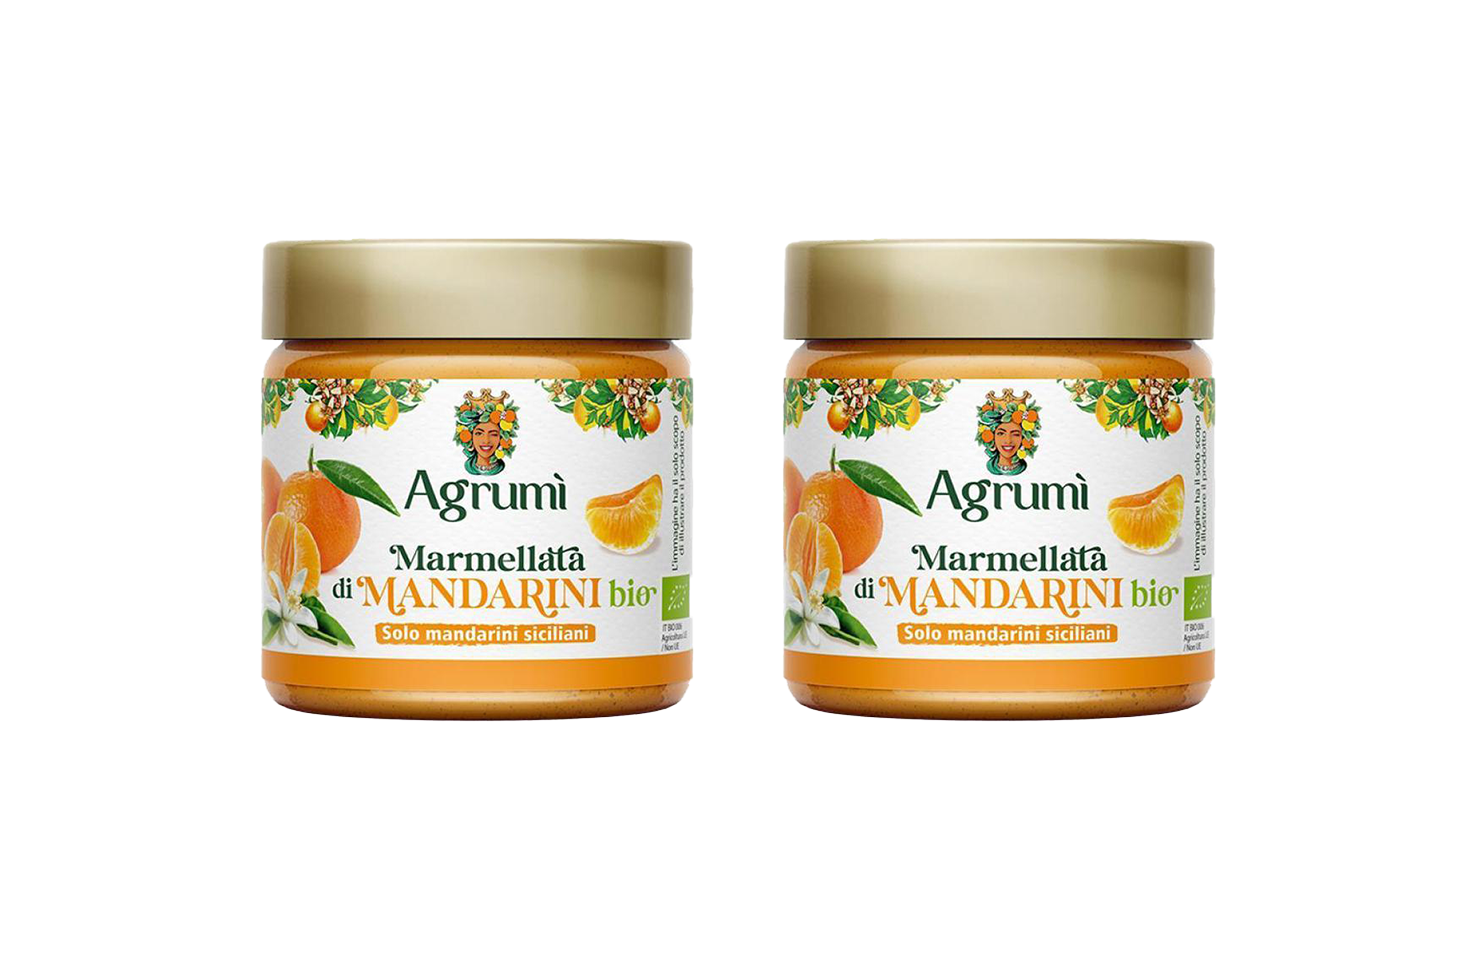 Marmellata di mandarini BIO Agrumi ricetta tradizionale vasetto 310gr x 2pz